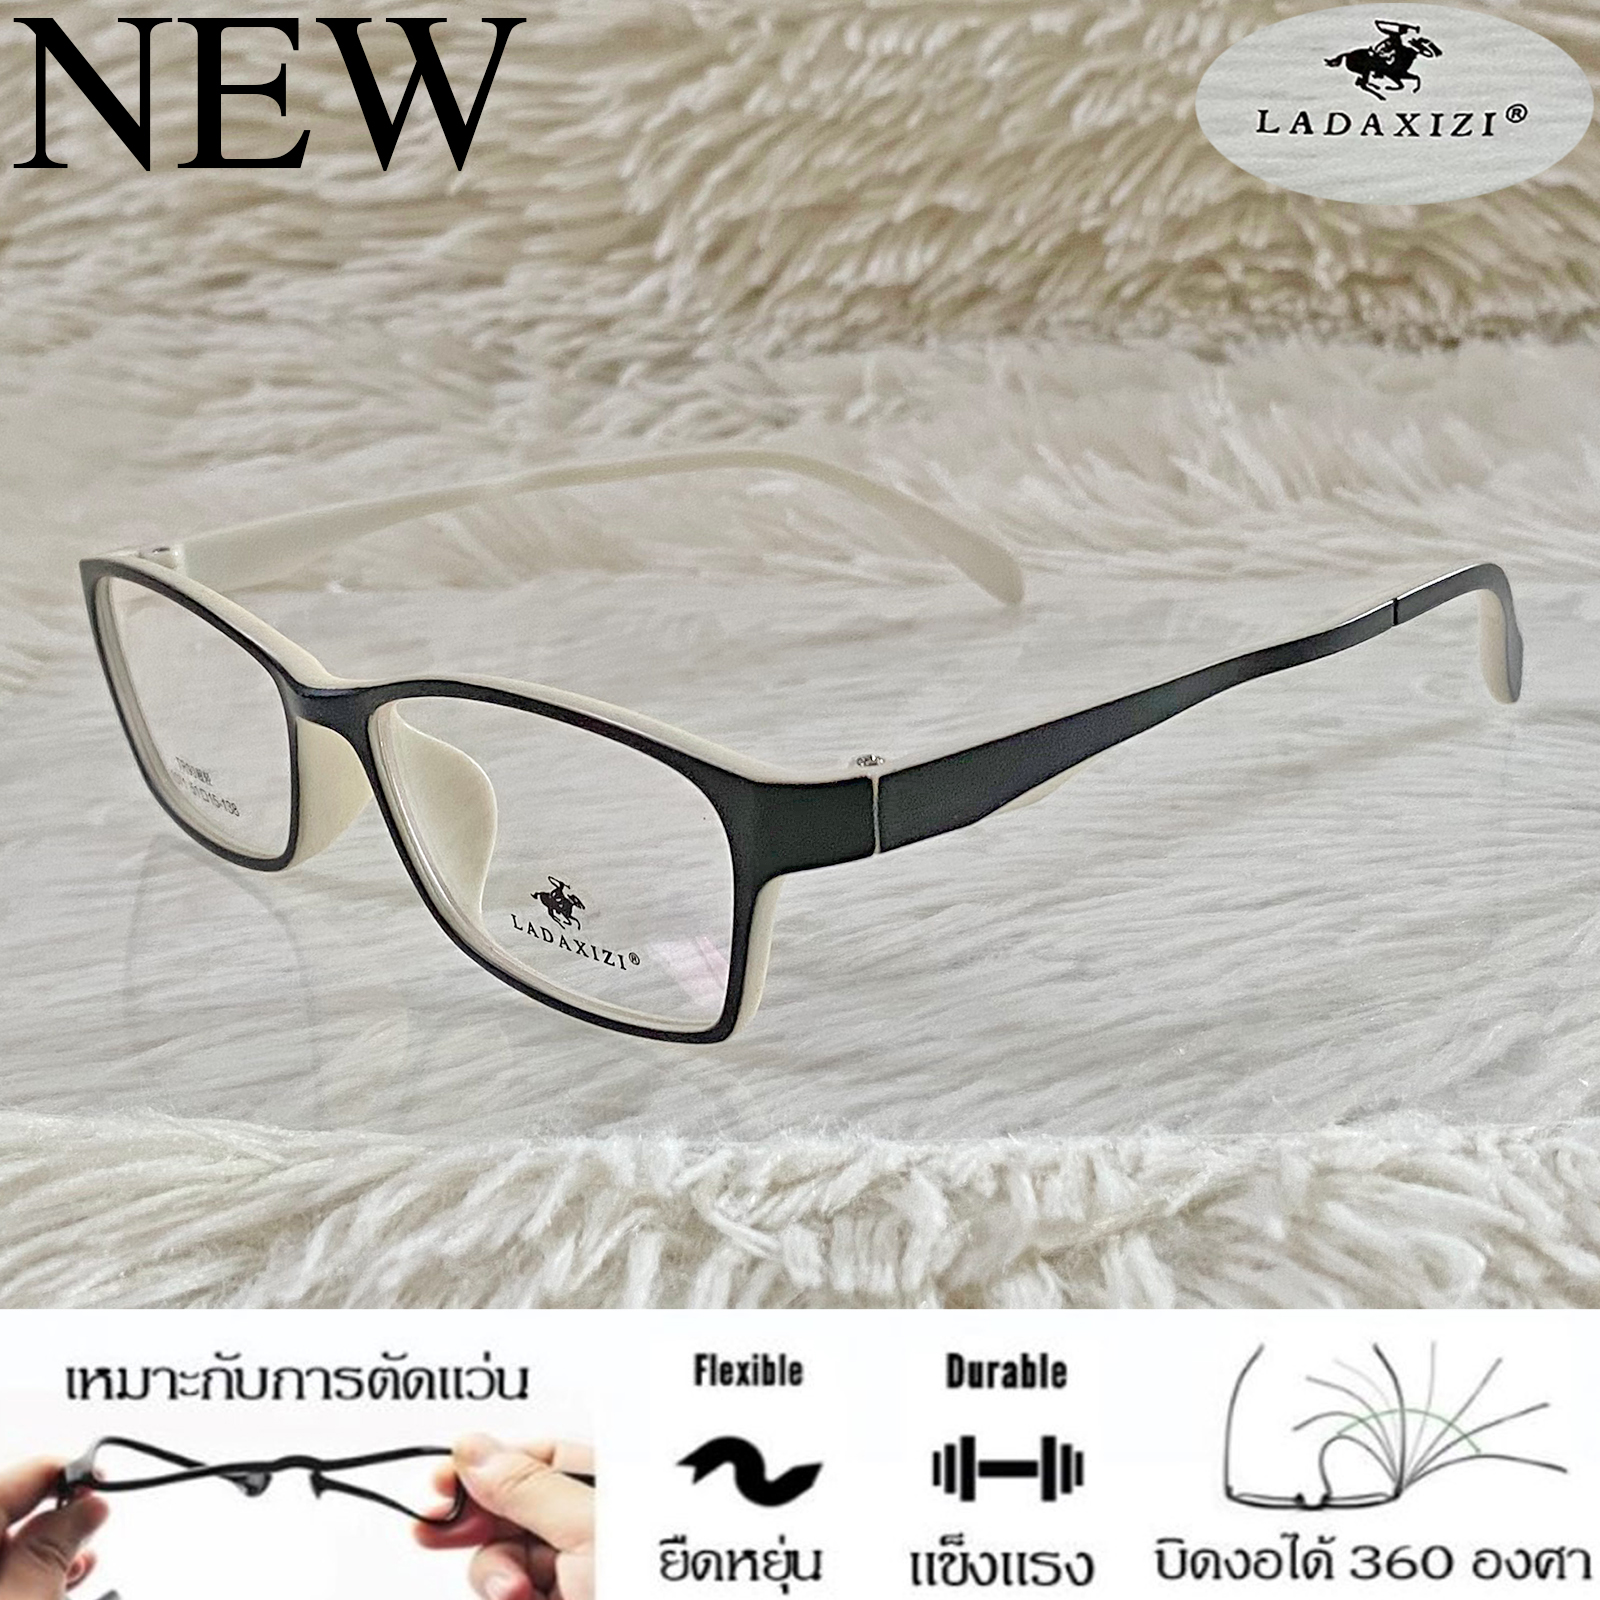 กรอบแว่นตา TR 90 สำหรับตัดเลนส์ แว่นตา Fashion ชาย-หญิง รุ่น LADAXIZI 1071 สีดำ กรอบเต็ม ทรงเหลี่ยม ขาข้อต่อ ทนความร้อนสูง รับตัดเลนส์ ทุกชนิด